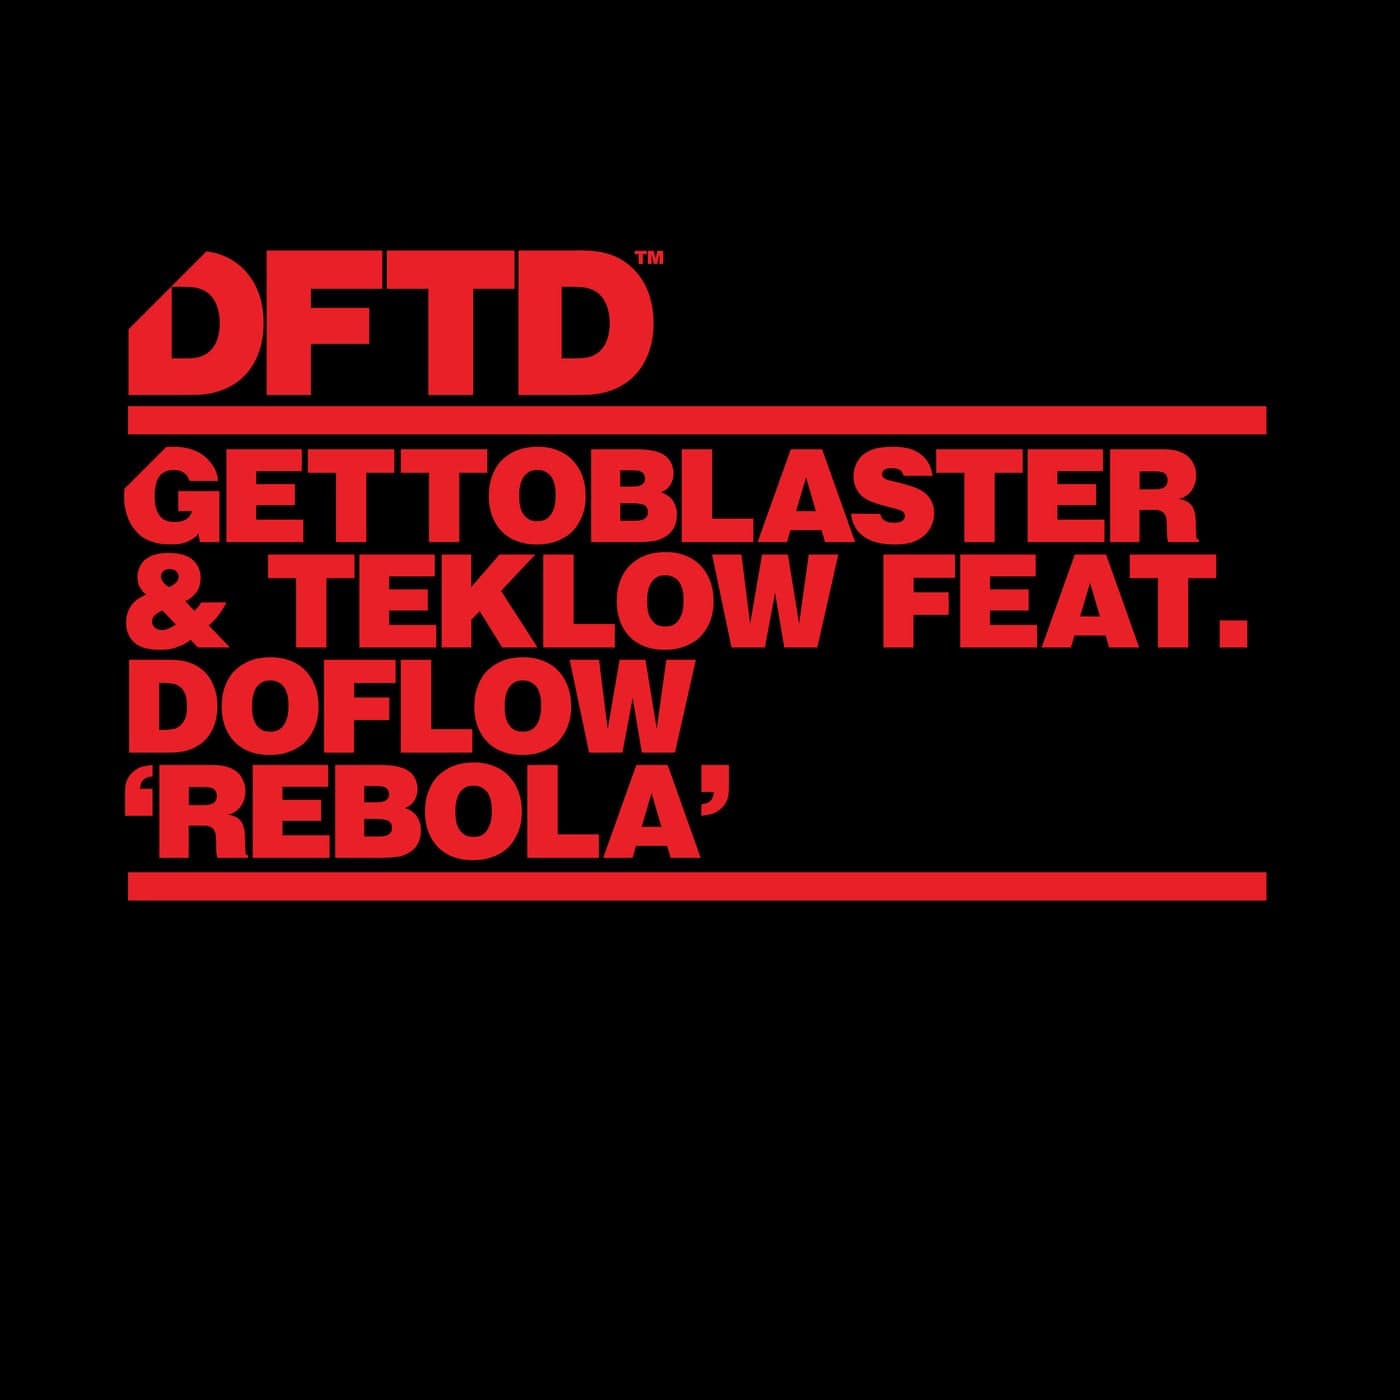 Download Gettoblaster, Teklow, DoFlow - Rebola - Extended Mix on Electrobuzz